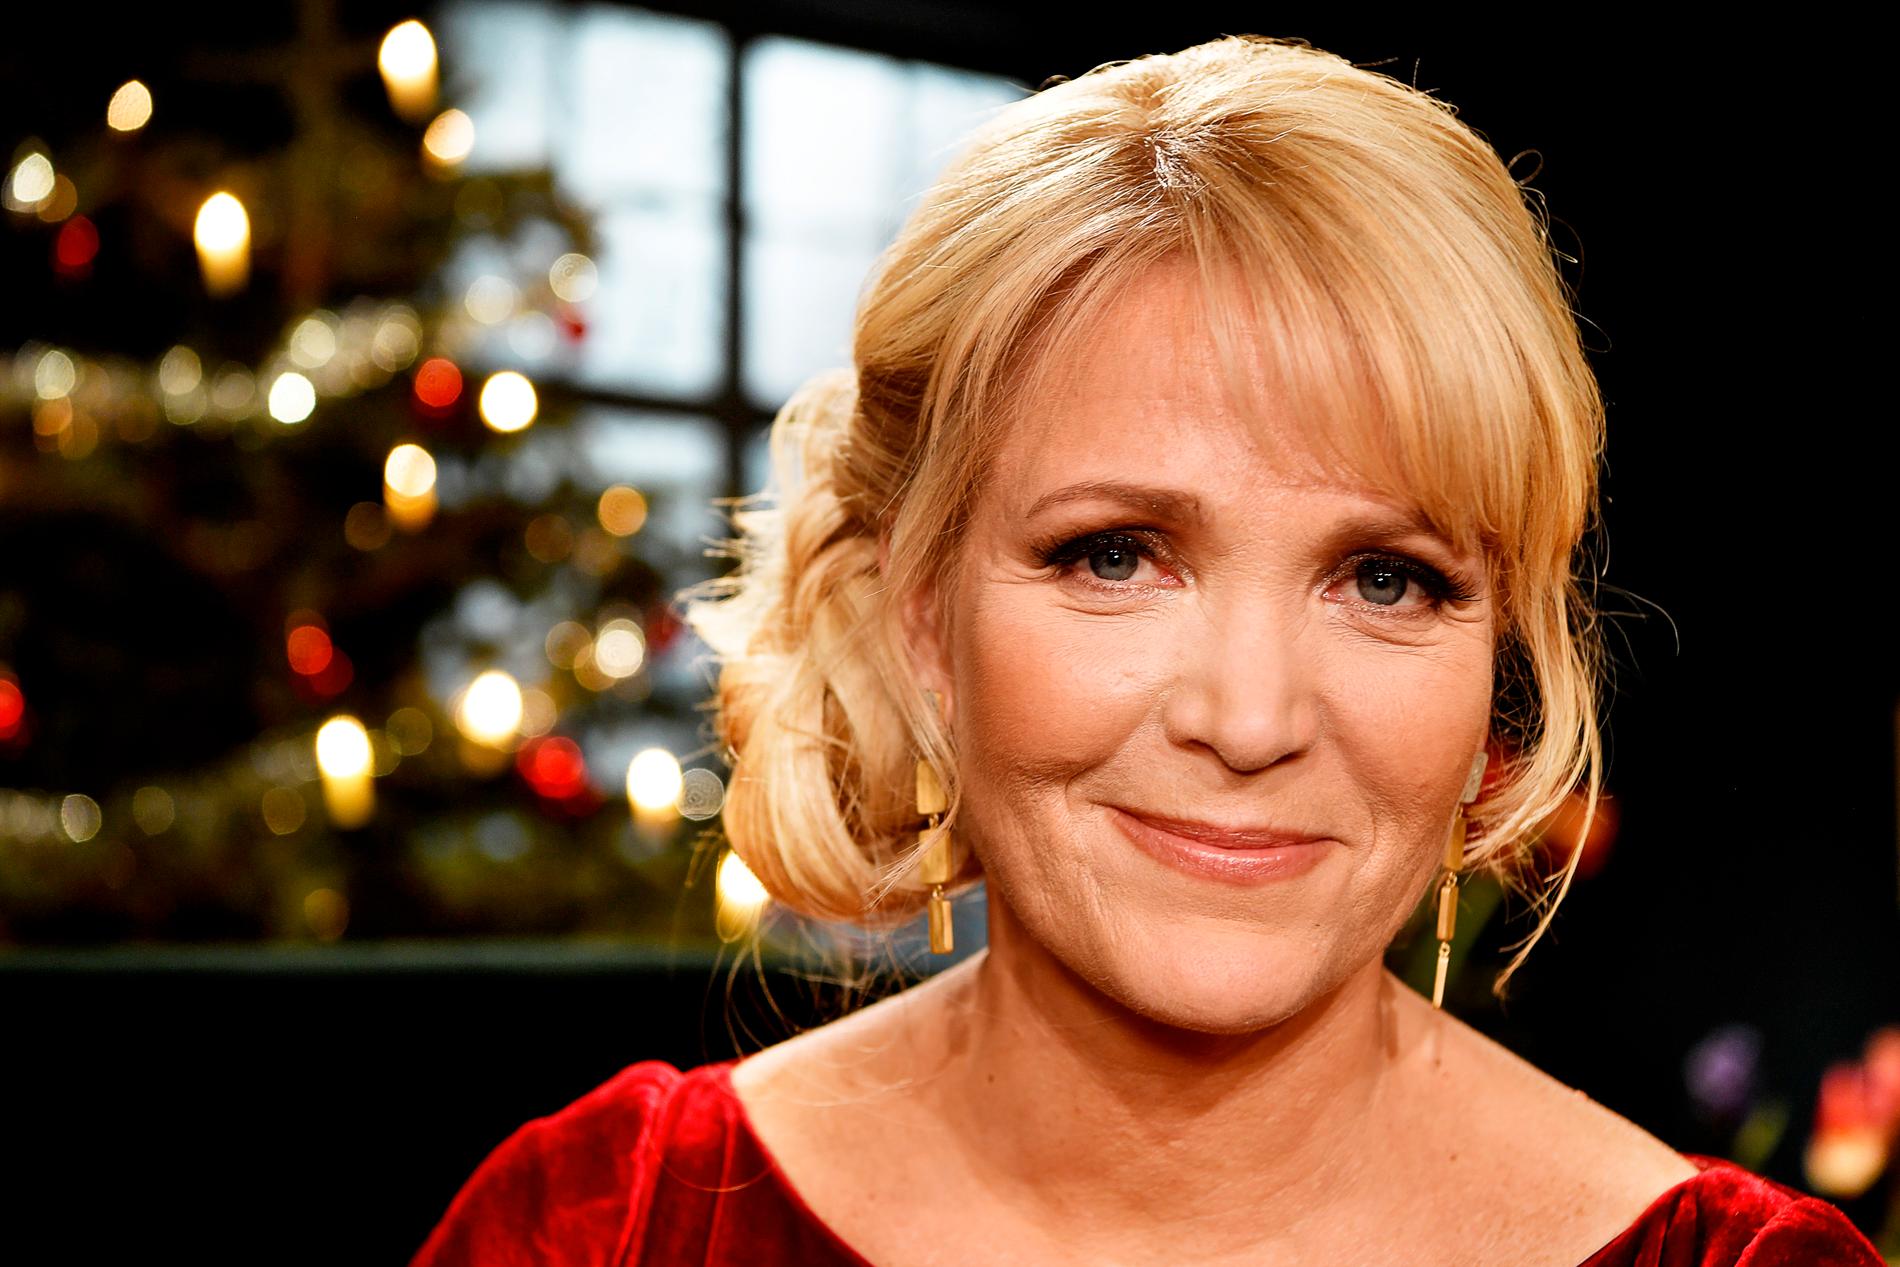  Kattis Ahlström, julvärd i SVT 2018.